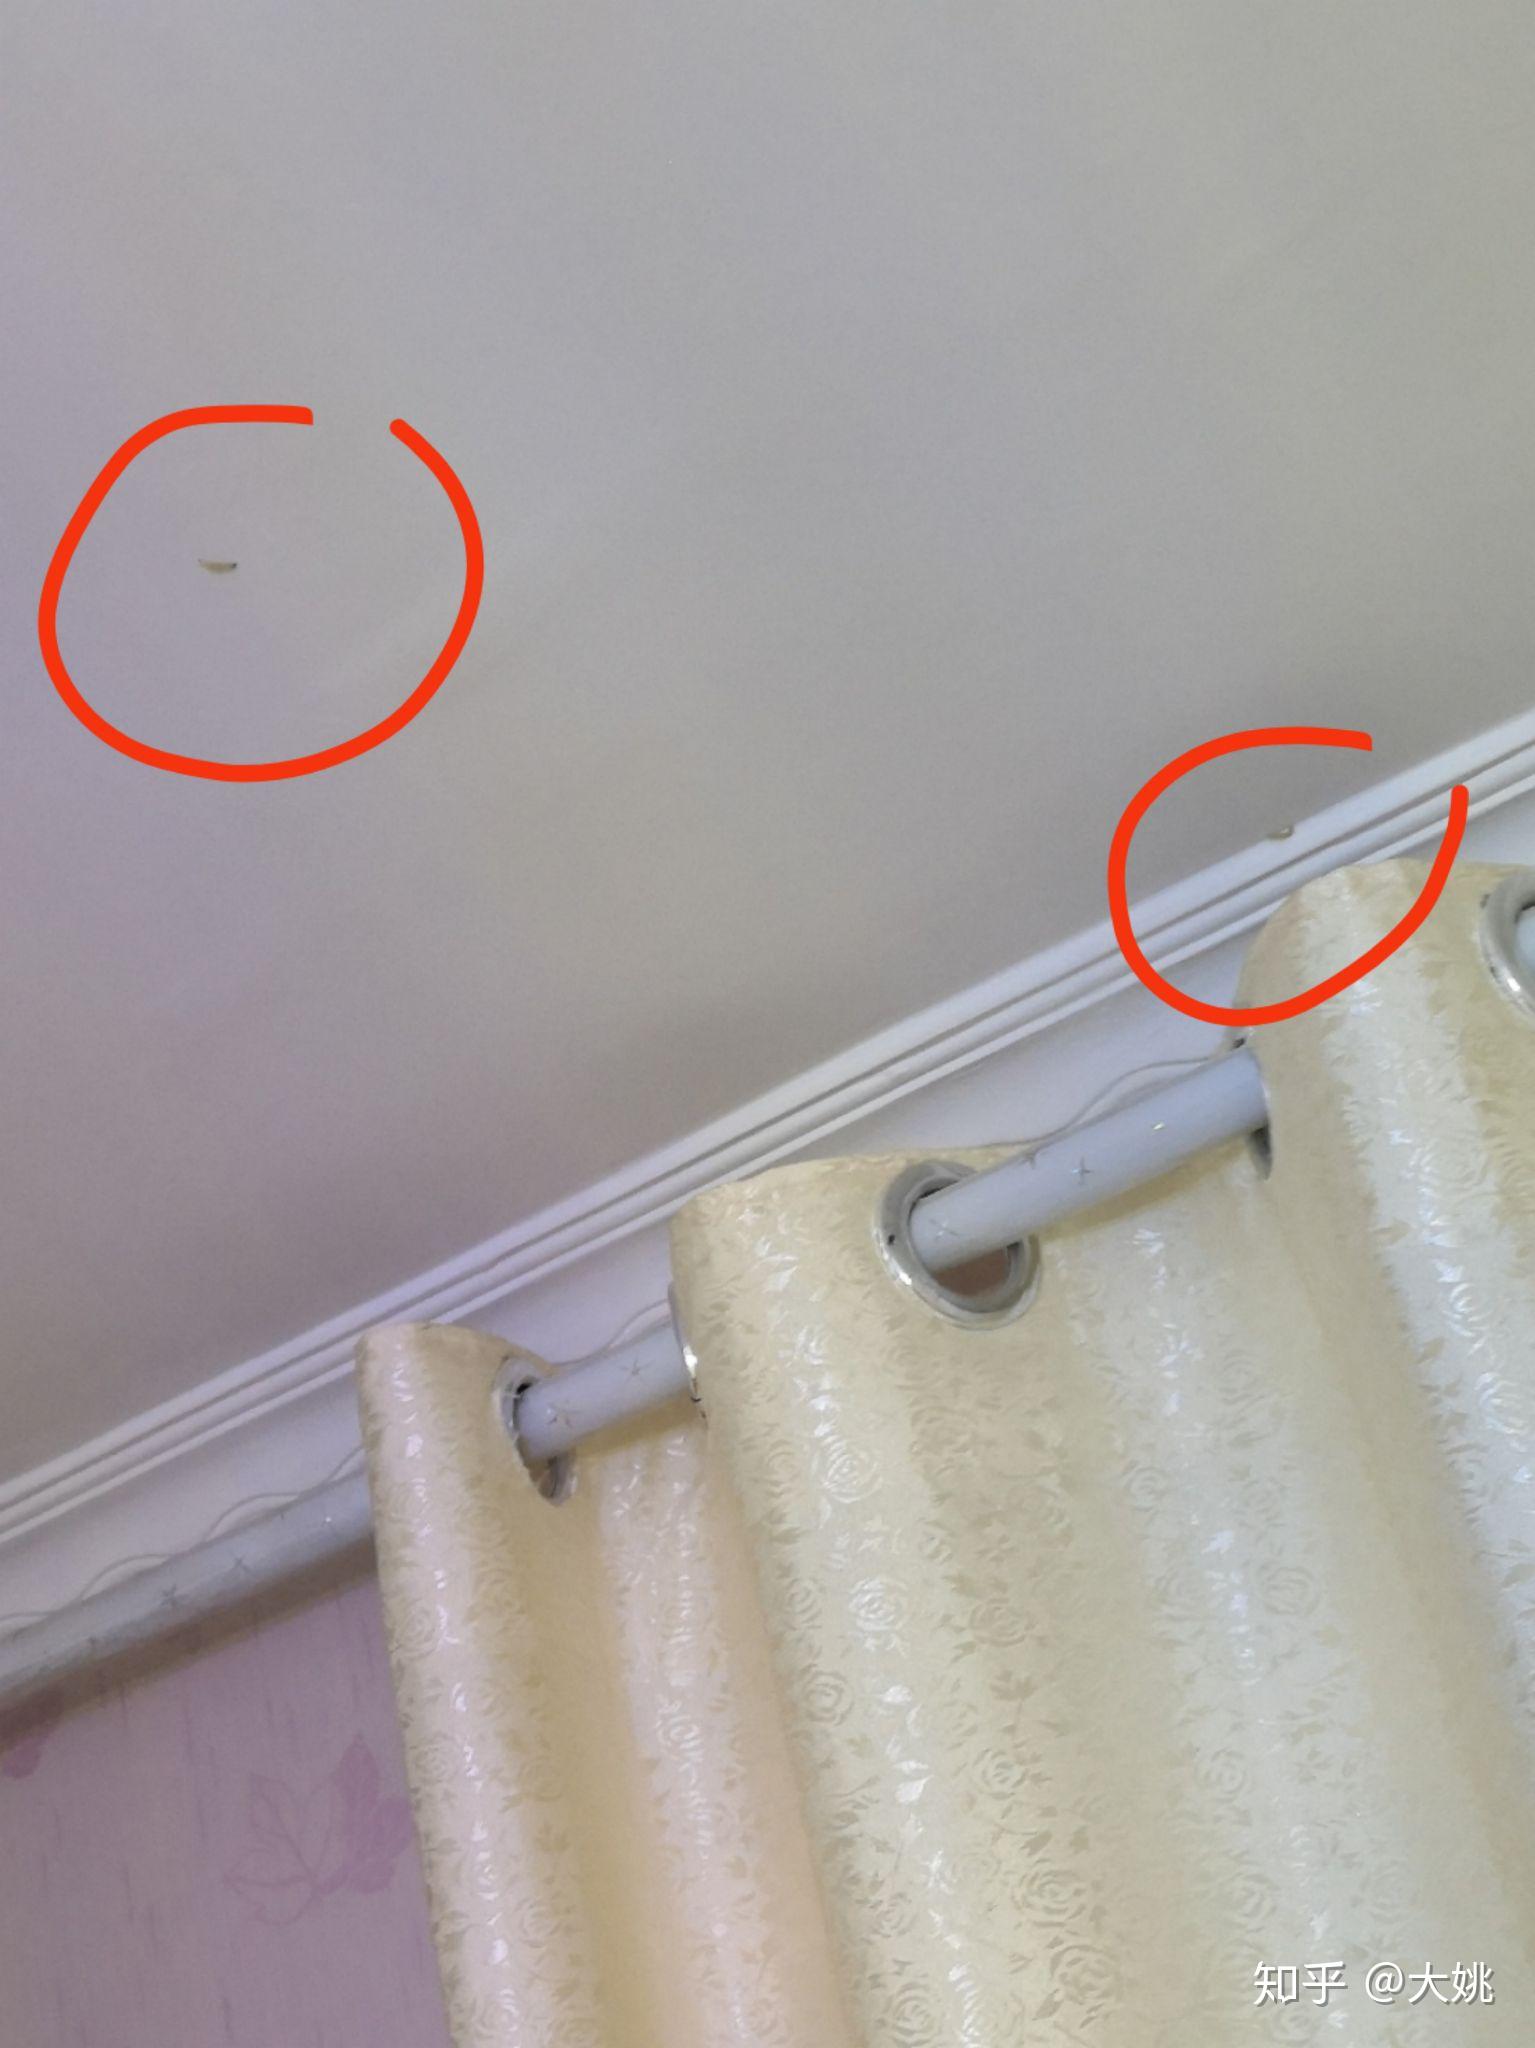 墙上天花板上有白色蠕动的虫子这是什么? 